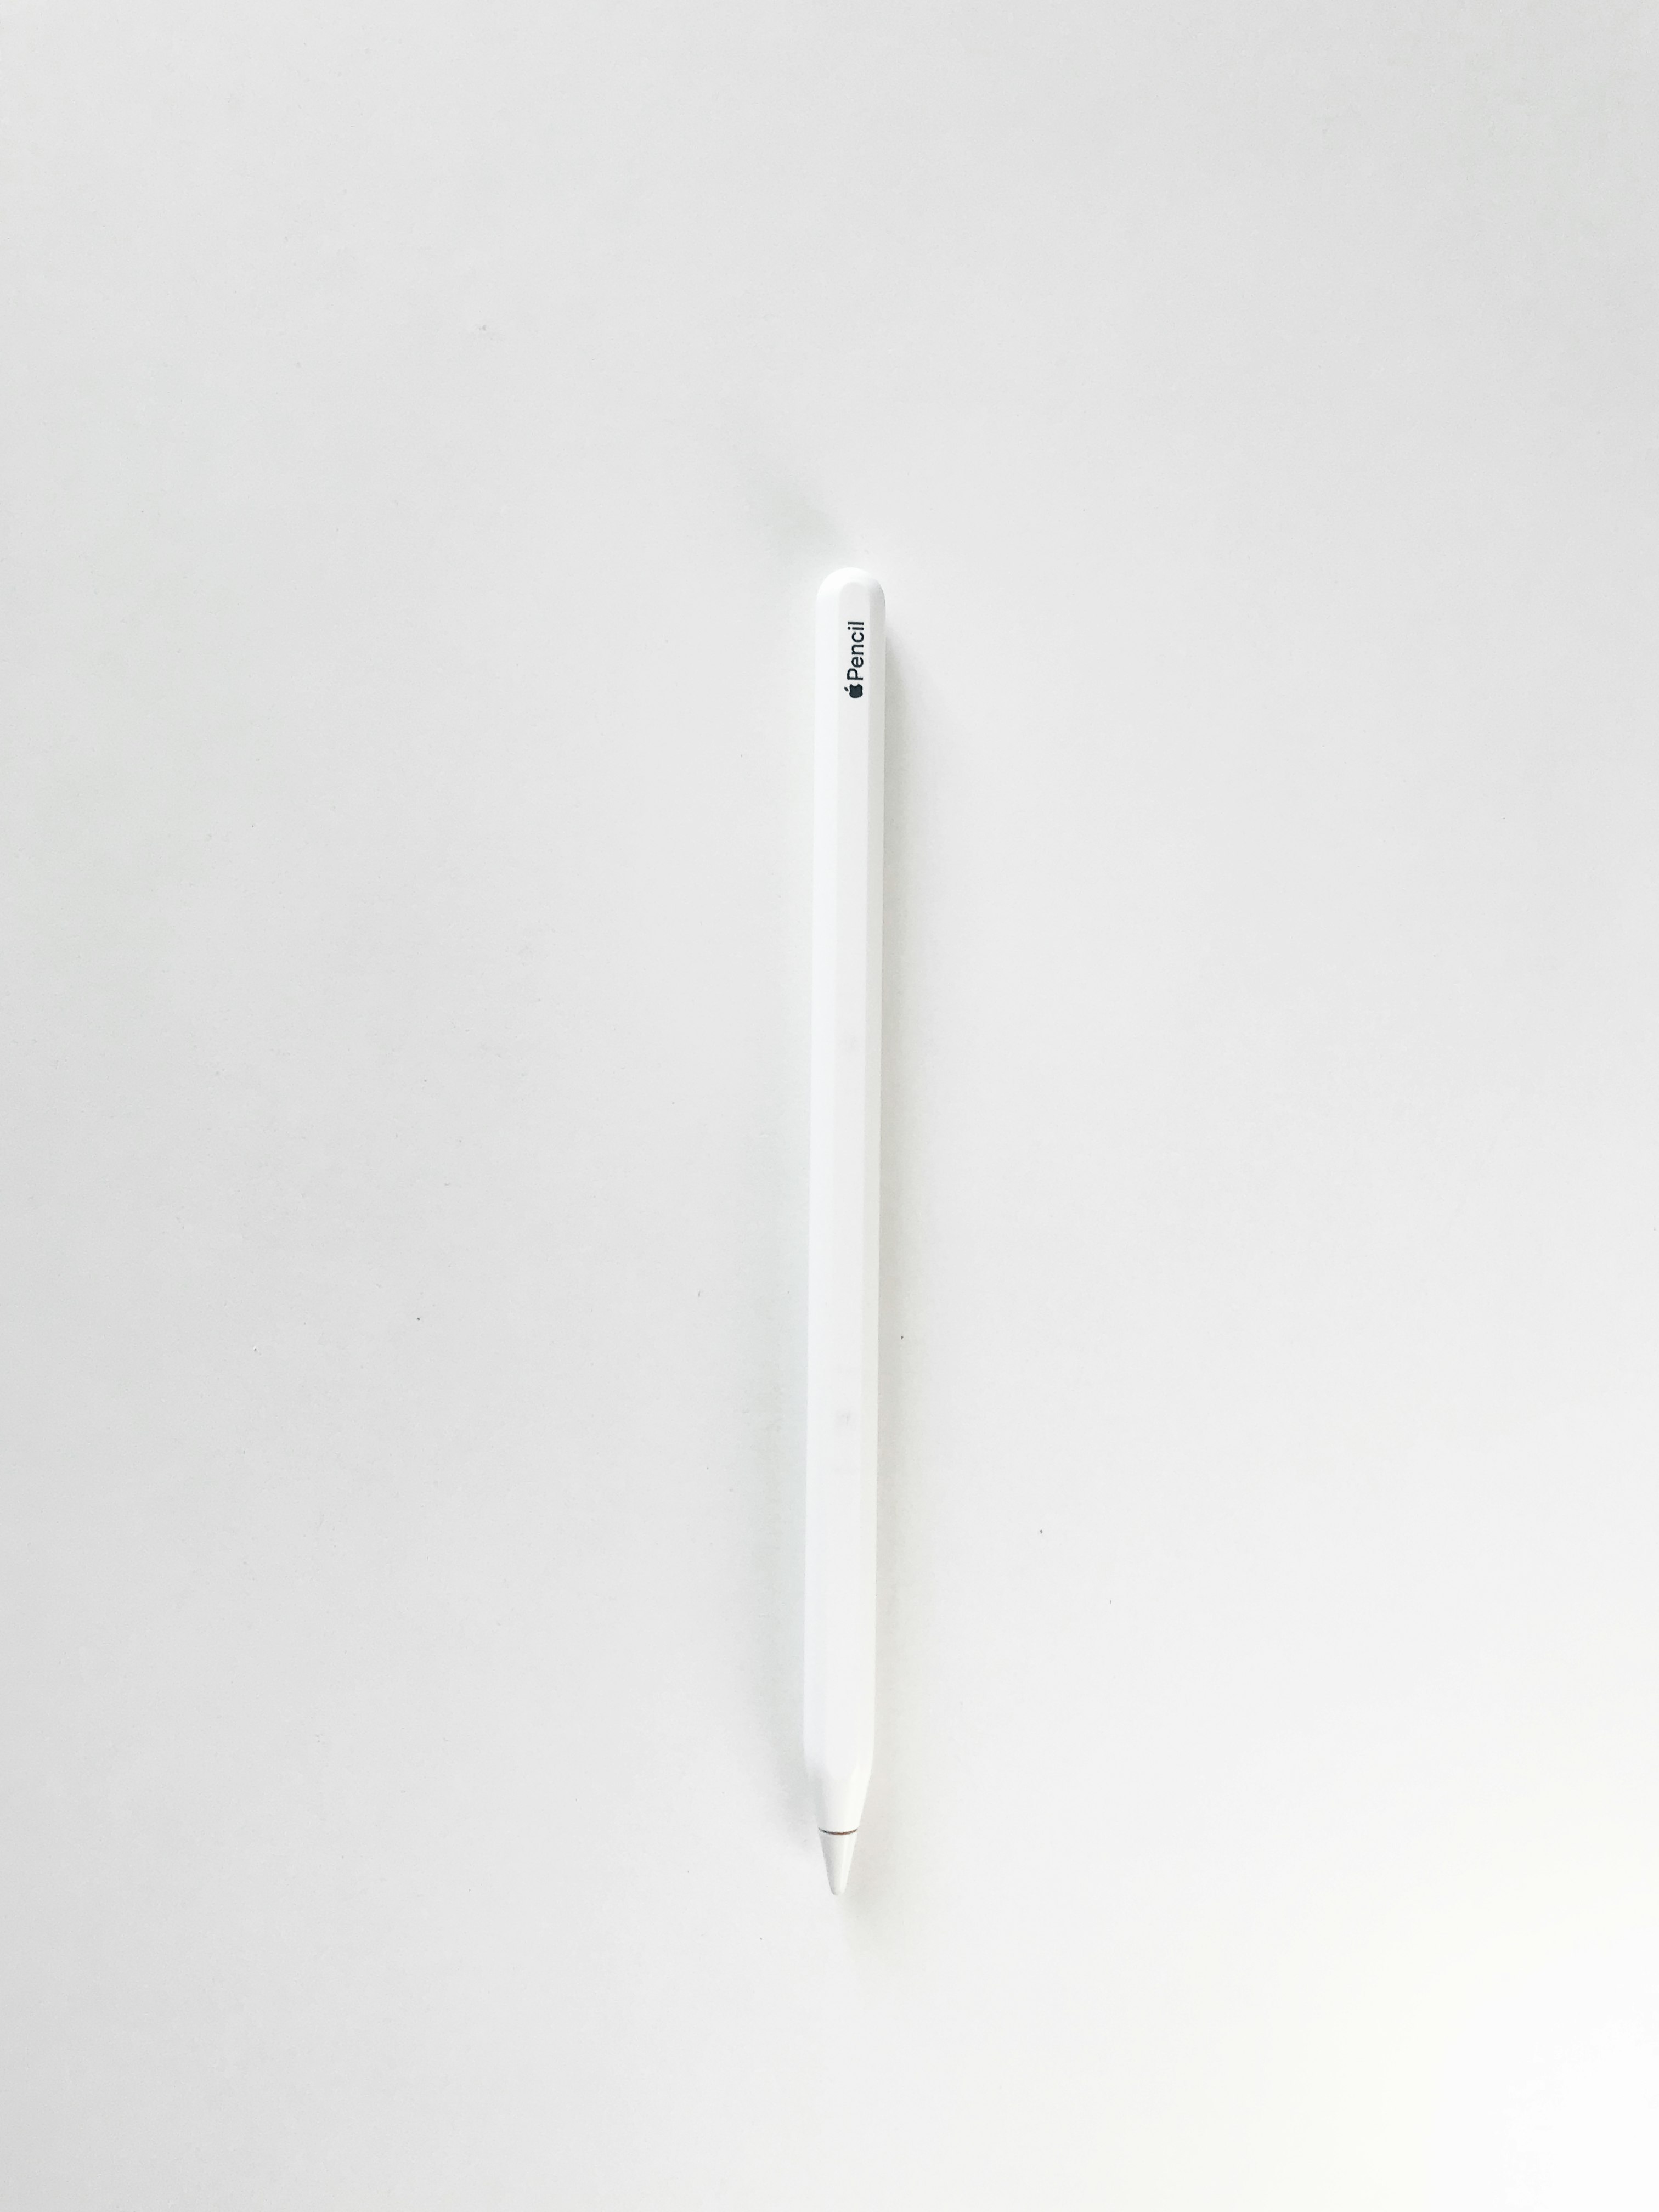 white pen on white surface